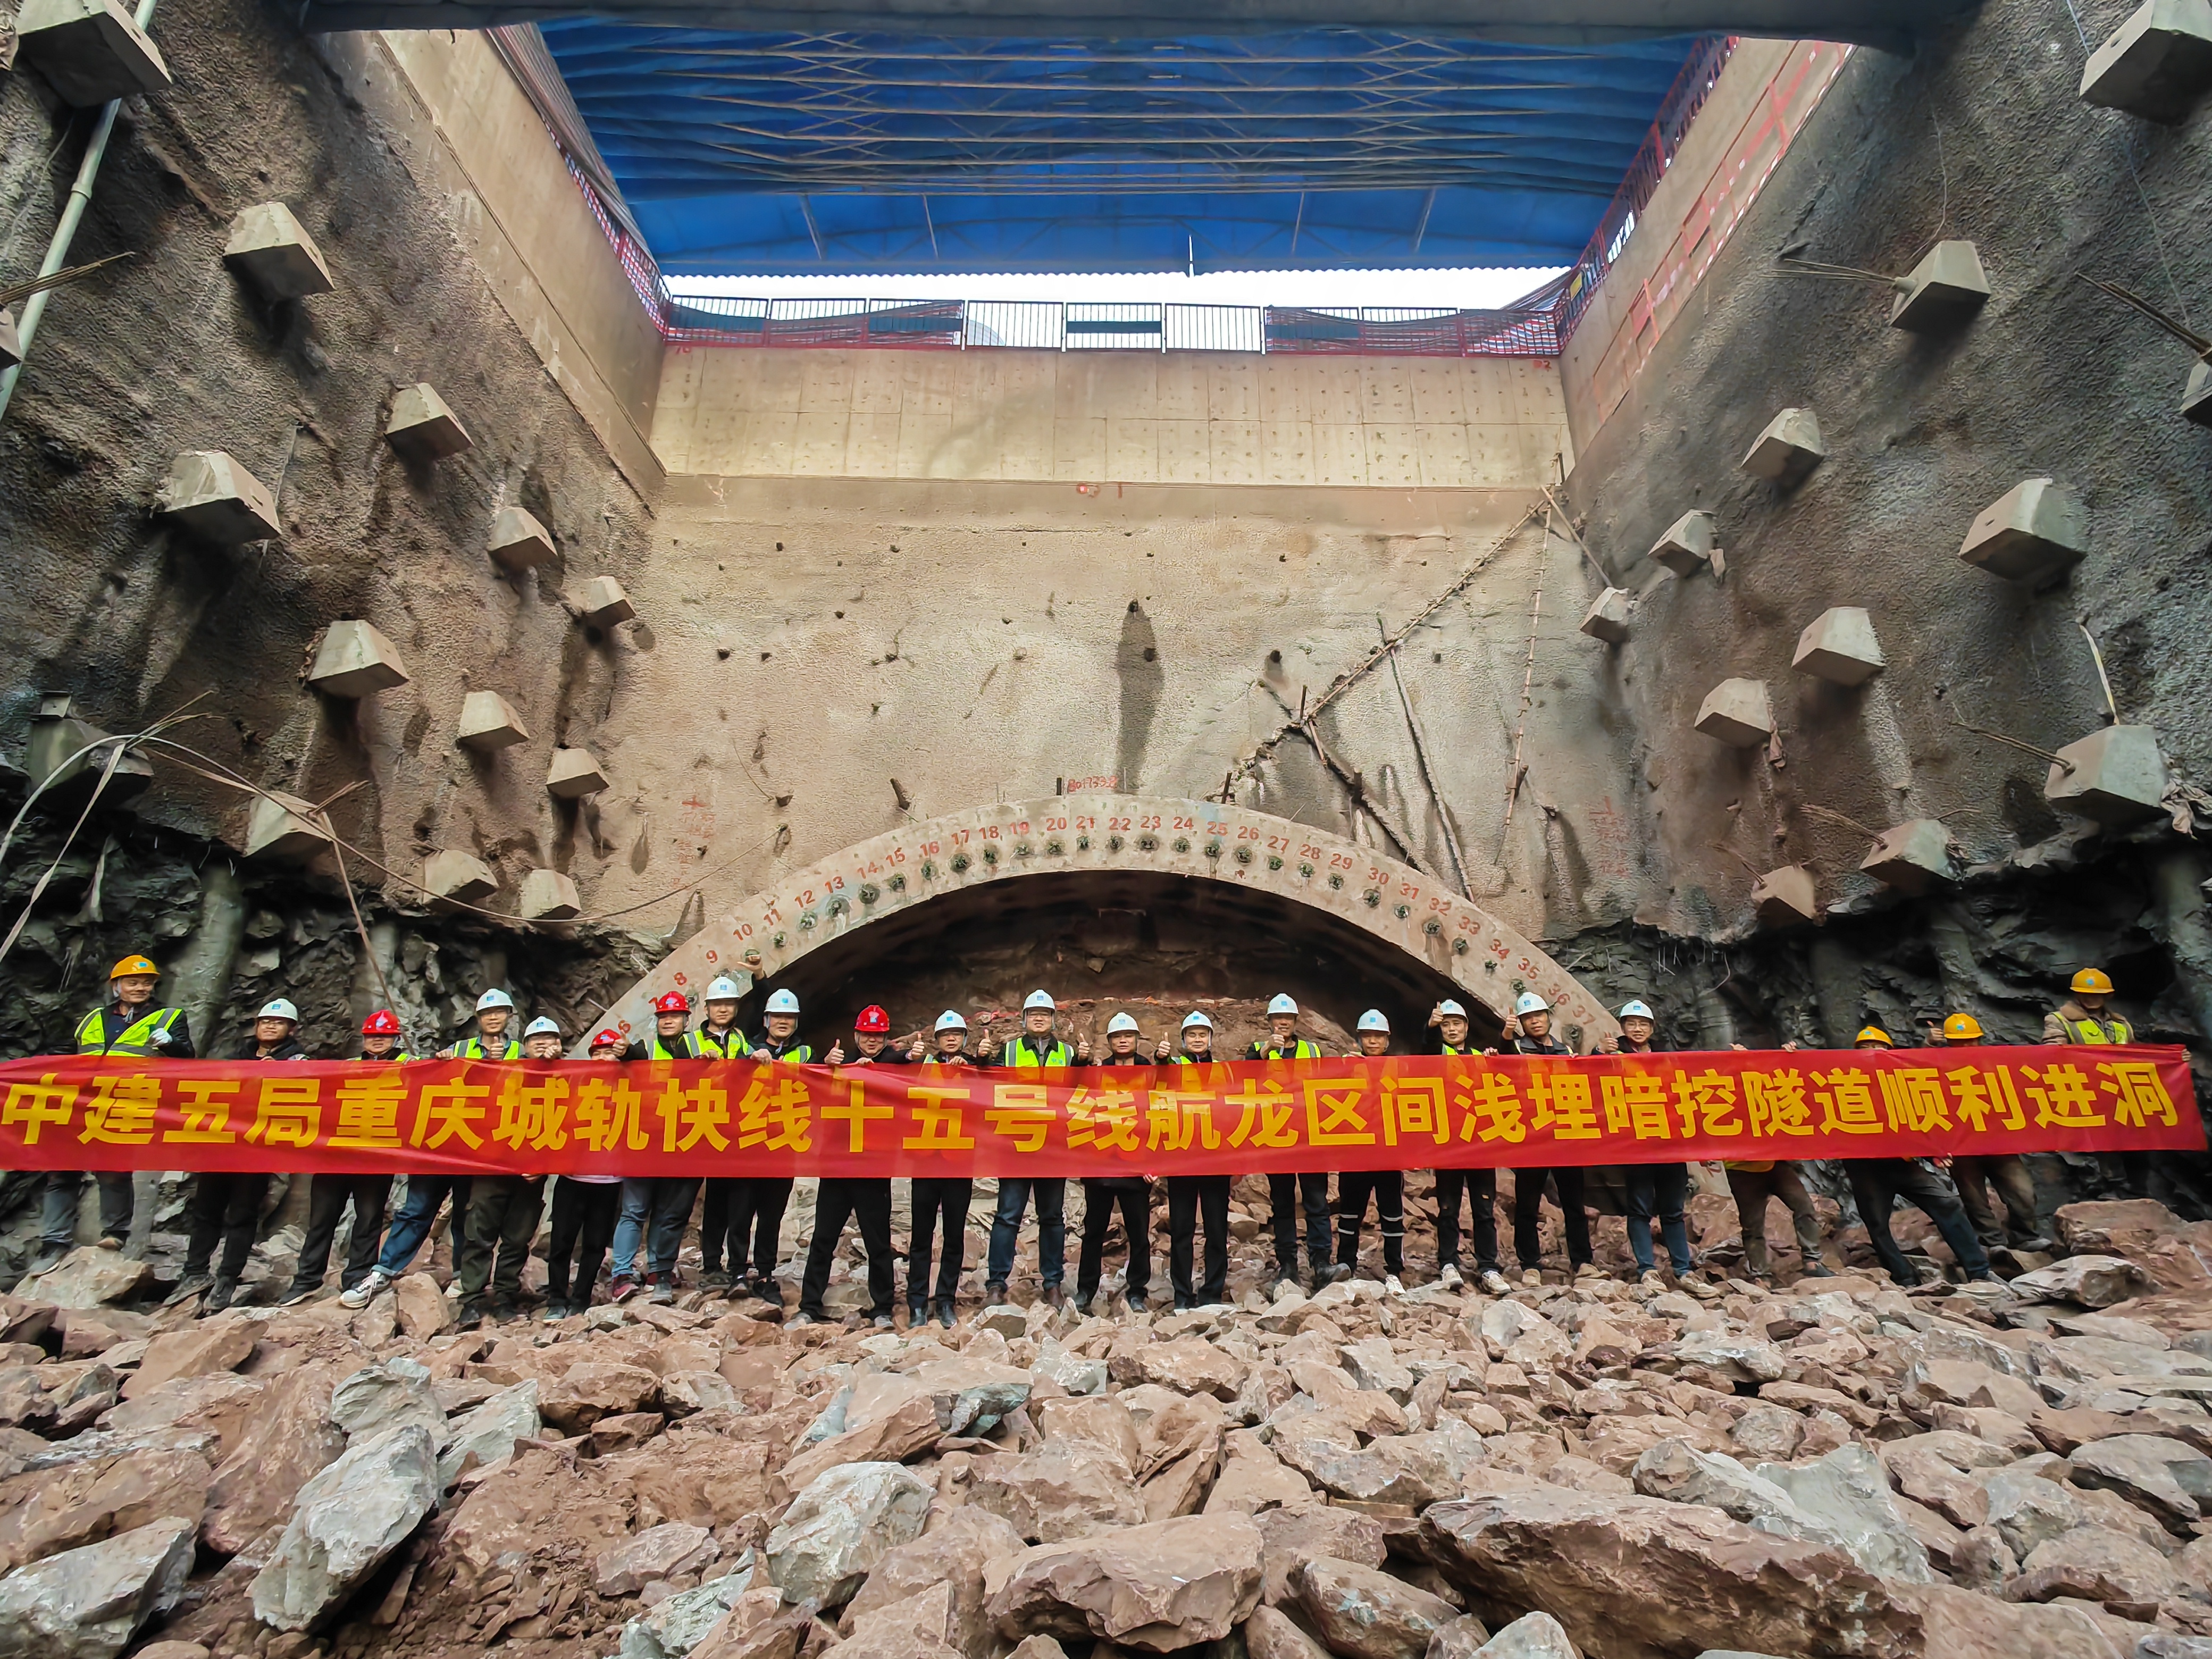 重庆轨道交通十五号线航龙区间浅埋暗挖隧道进洞